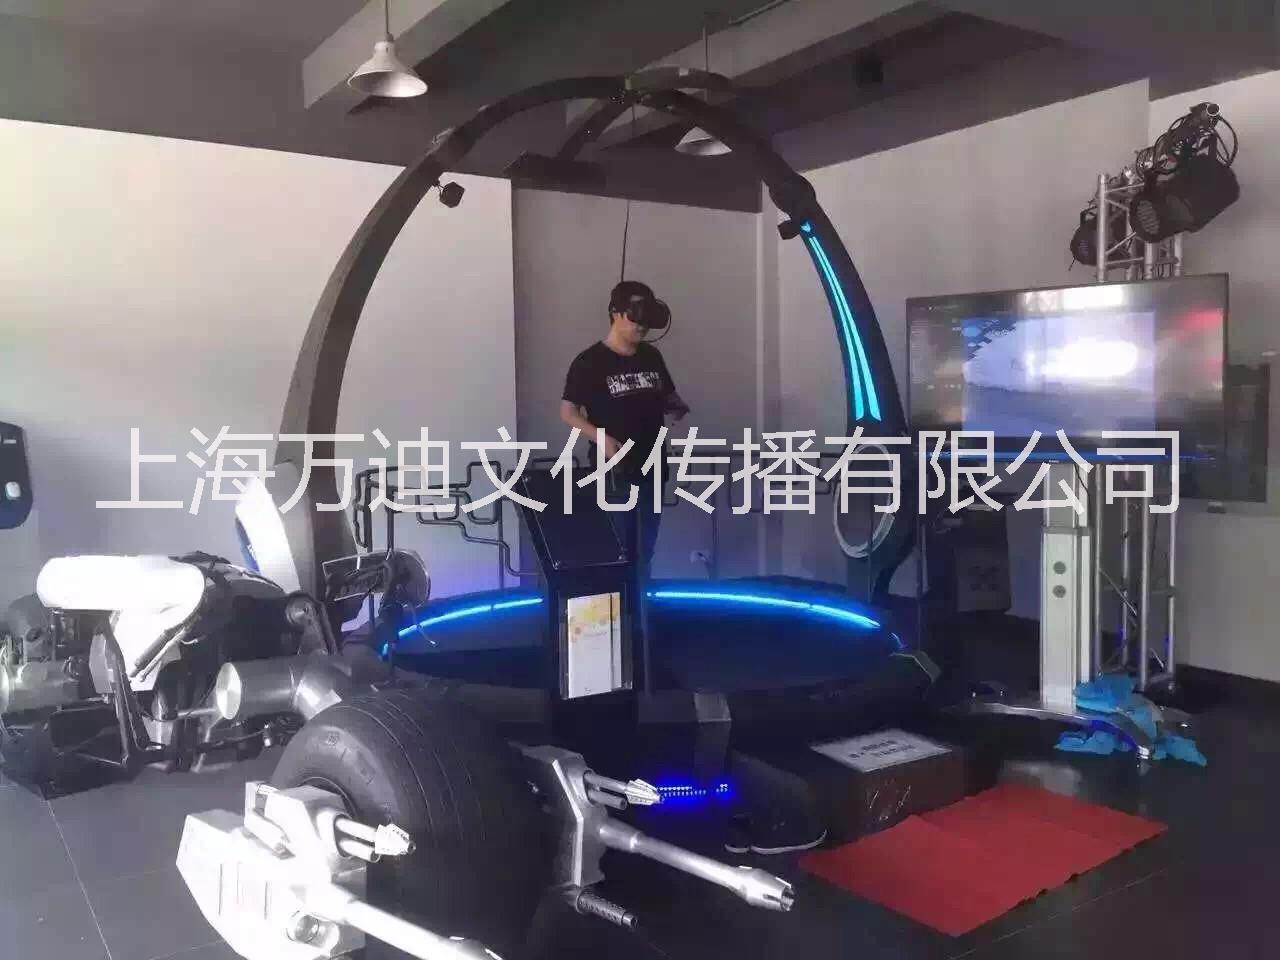 上海市上海科技公司VR虚拟现实设备租赁厂家